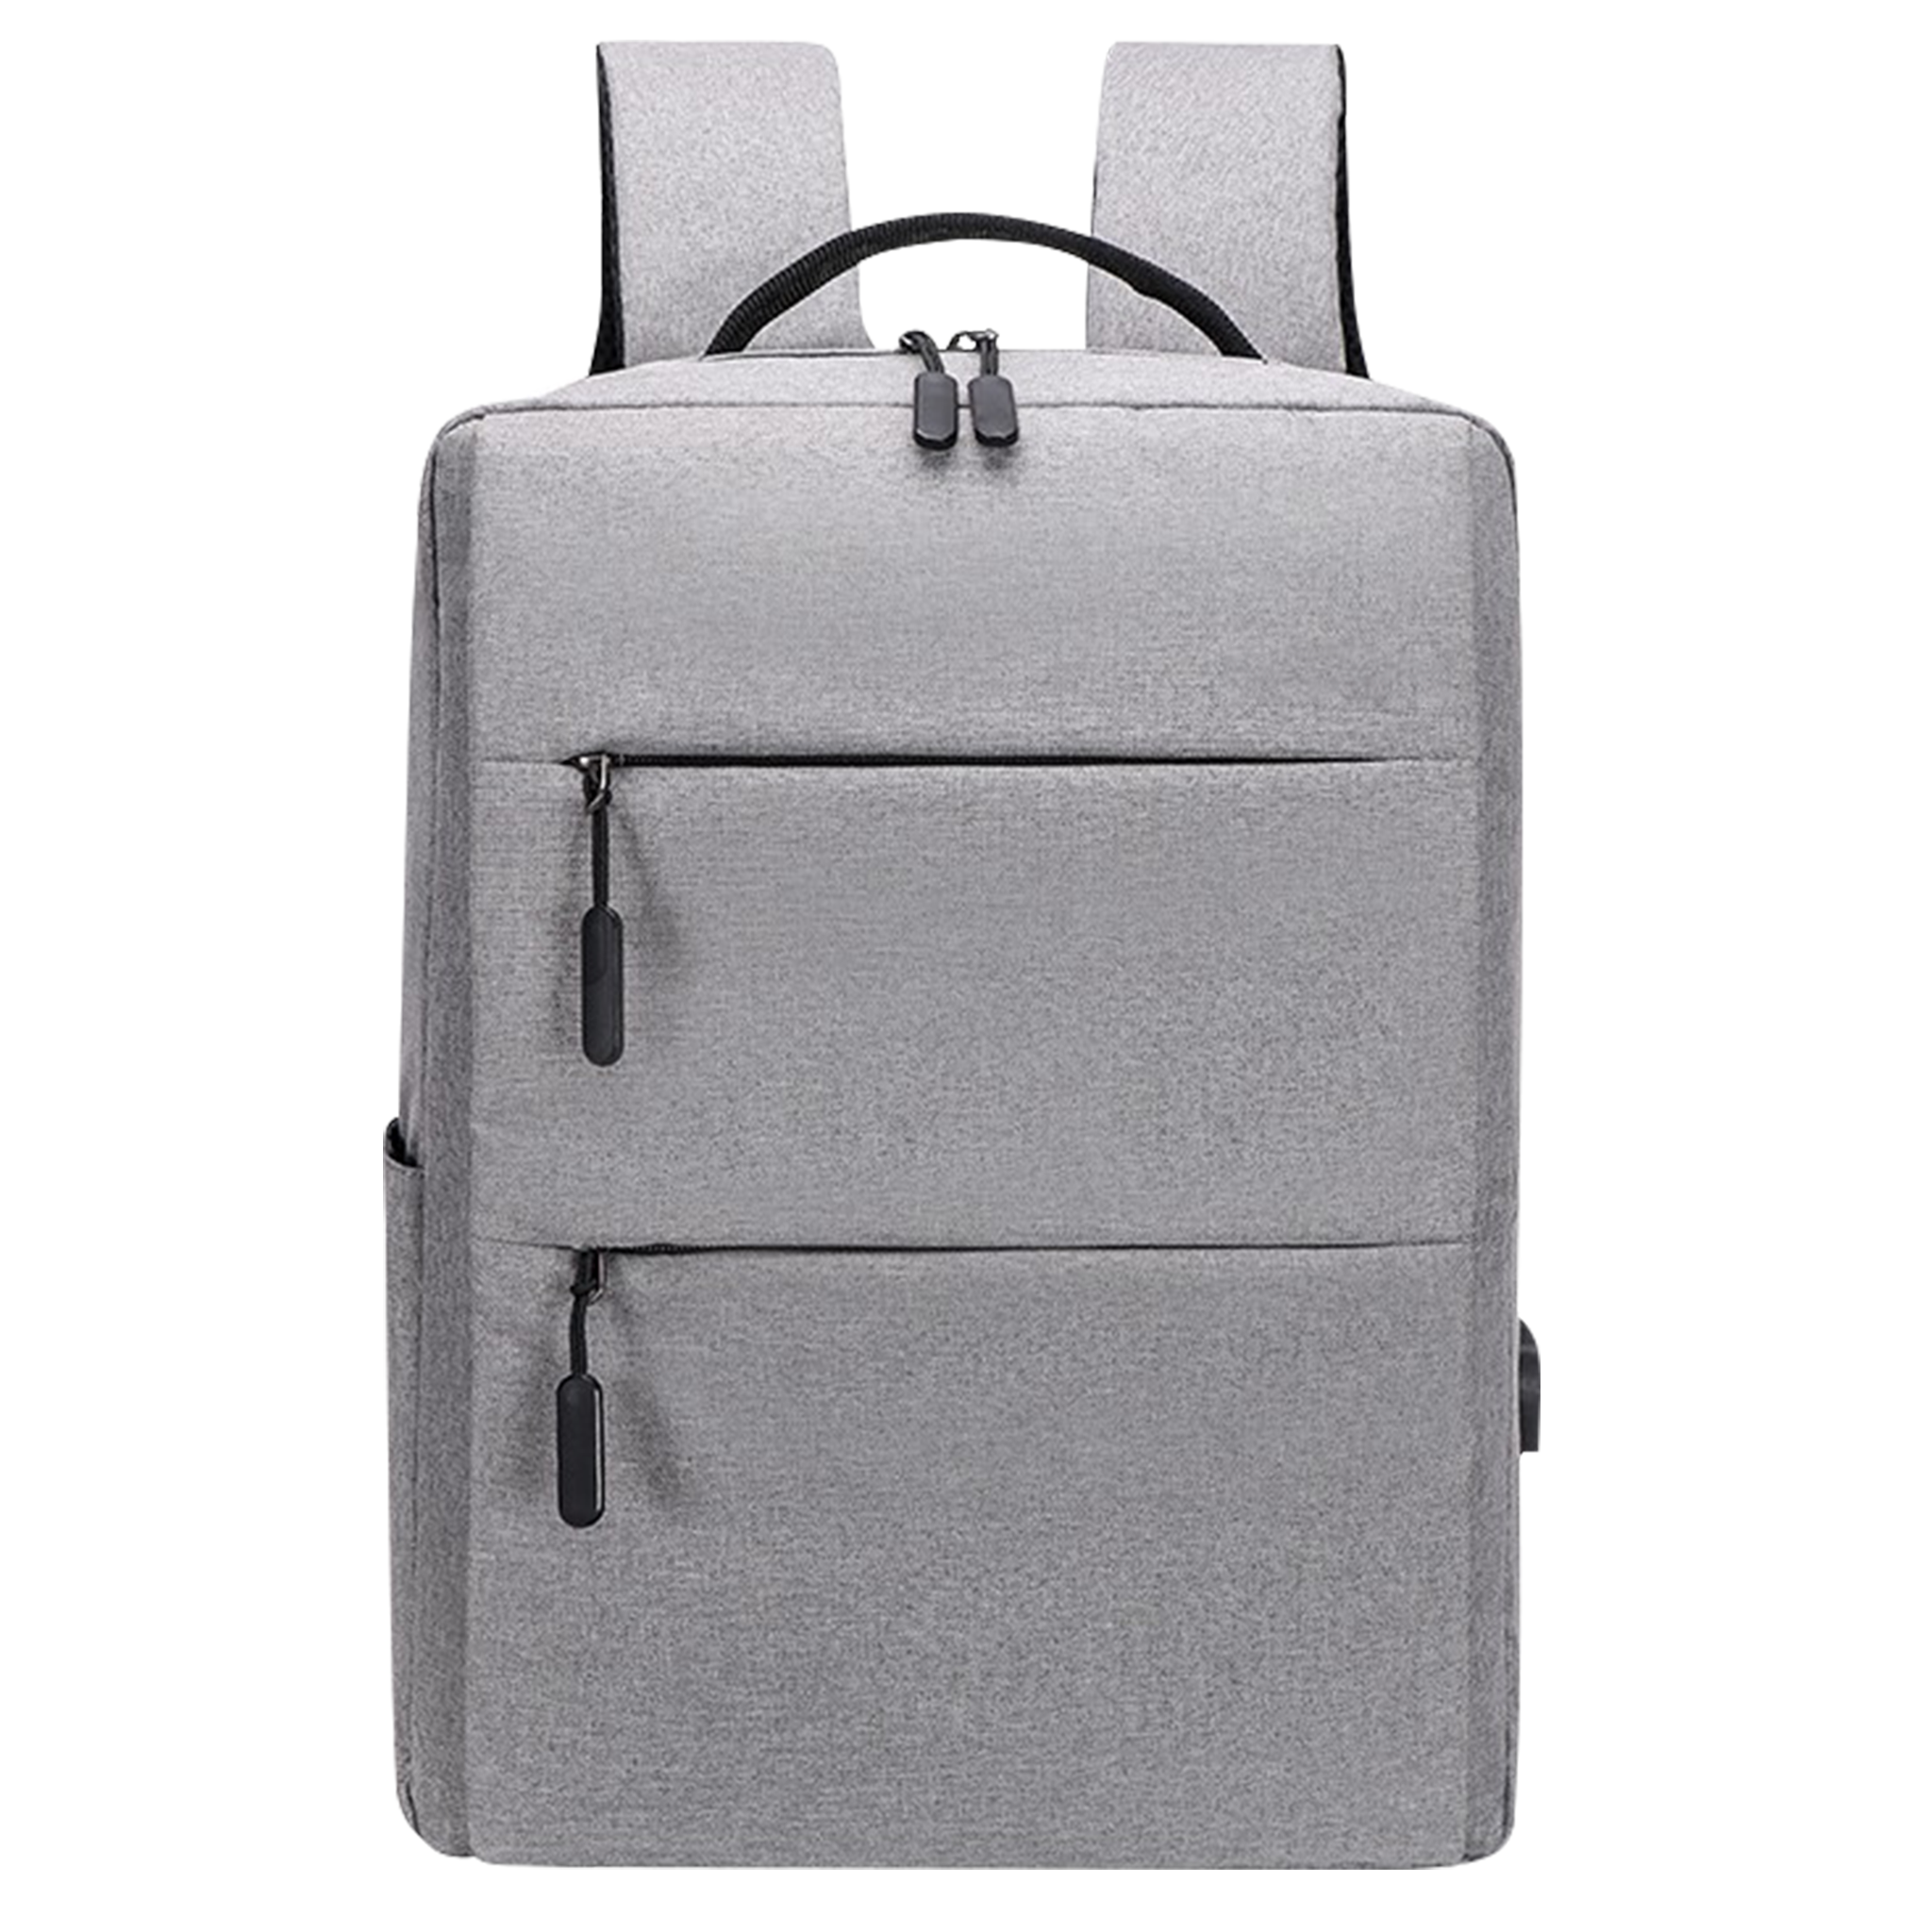 Cloth Laptop Bag (LP05)